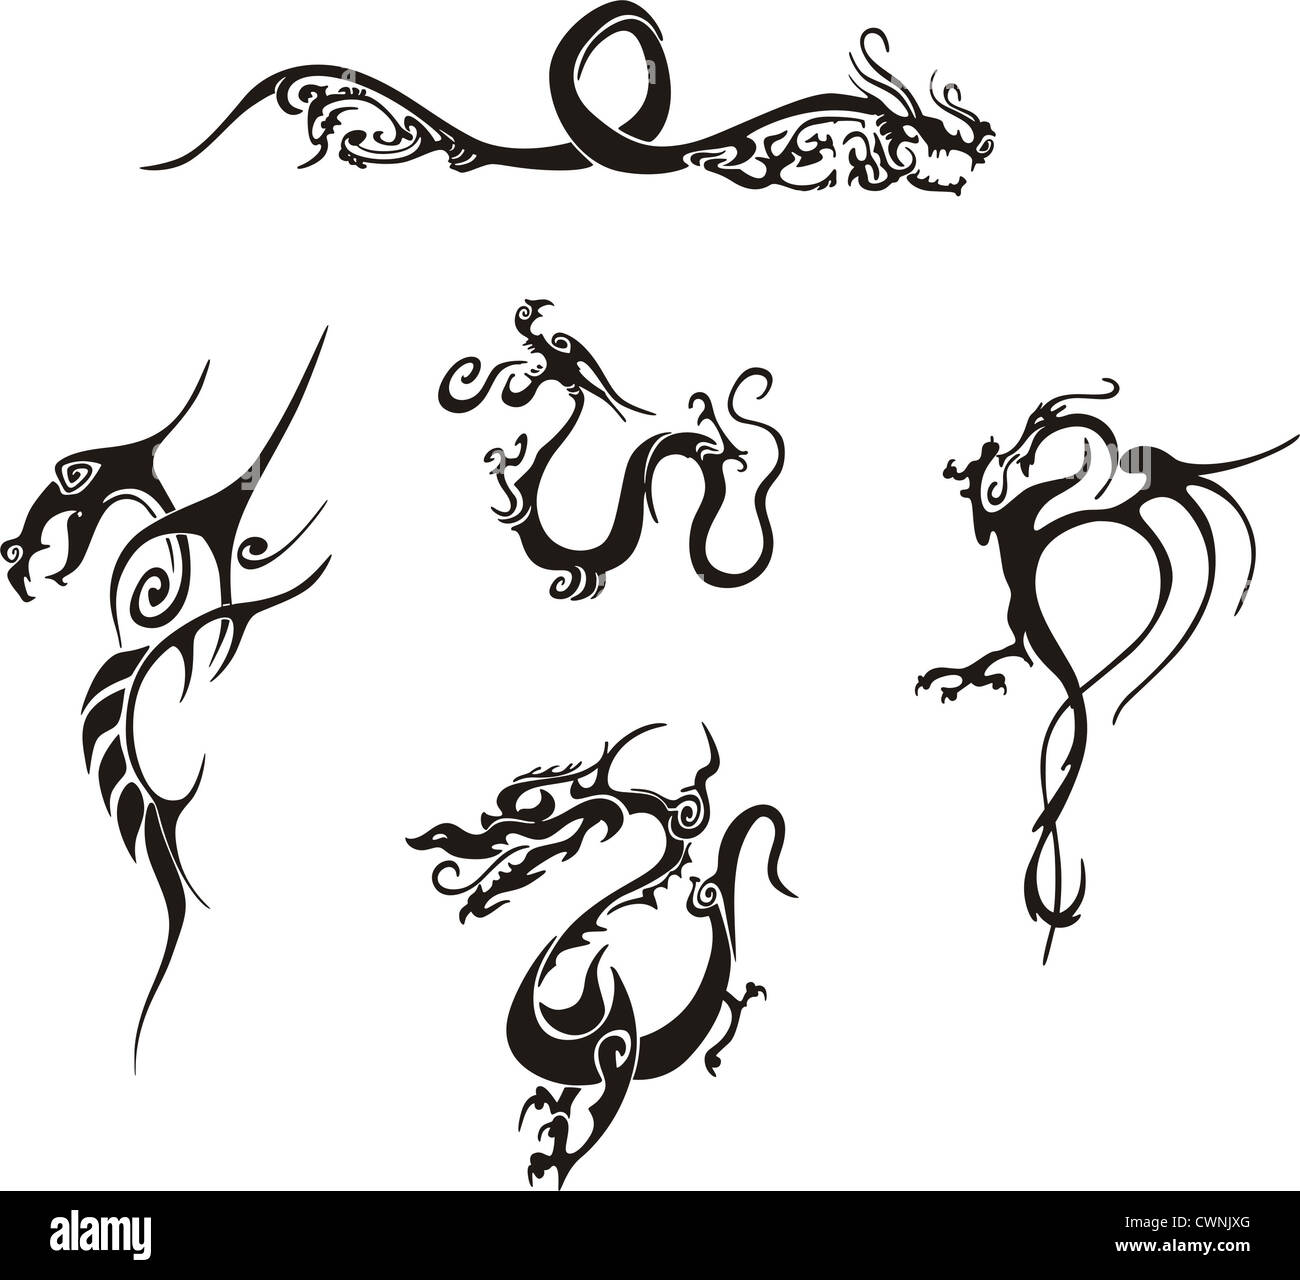 Cinq motifs de tatouage de dragon simple impressionnant. EPS vinyl-ready illustrations, croquis en noir et blanc. Banque D'Images